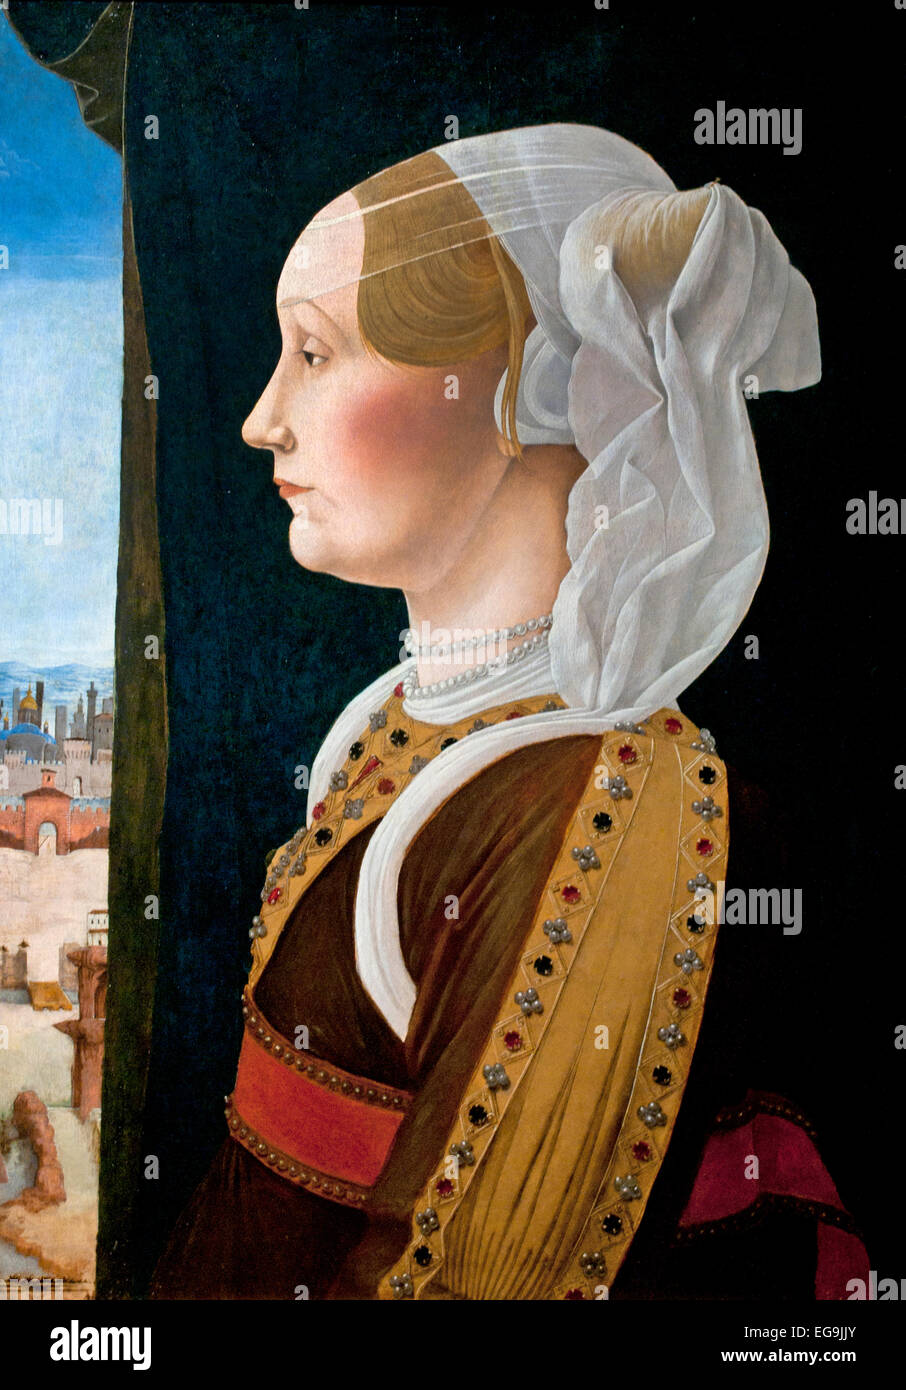 Giovanni II Bentivoglio et son épouse Ginevera Roberti, 1480 par Ercole de' Roberti. ( Roberti Bentivoglio 1443 - 1508 noble italien qui a gouverné comme tyran de Bologne à partir de 1463 jusqu'à 1506 ) Italie Moyen-Âge Médiéval Banque D'Images